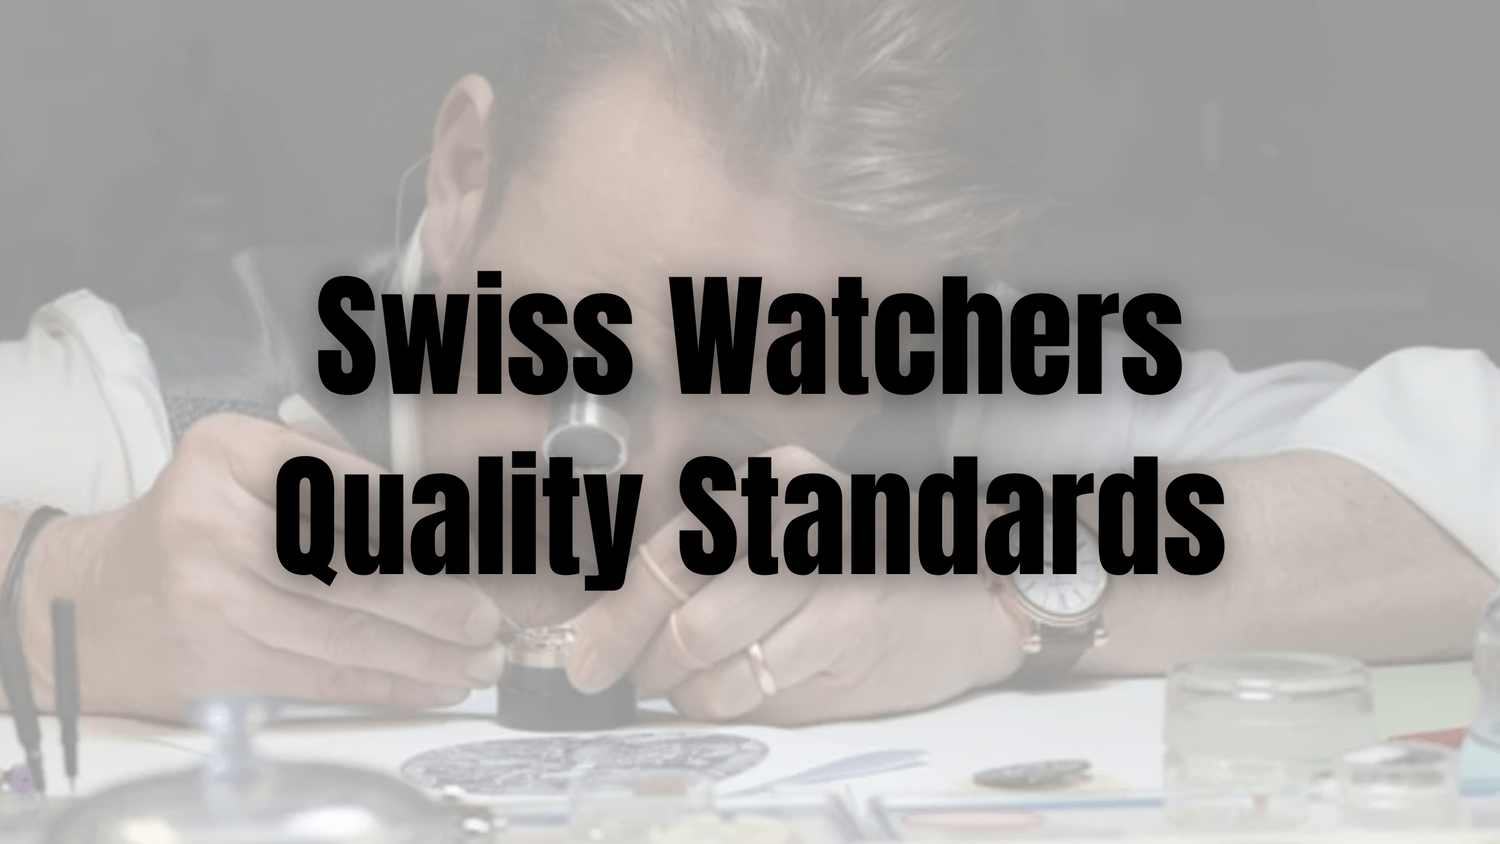 Swiss Watchers Quality Standards